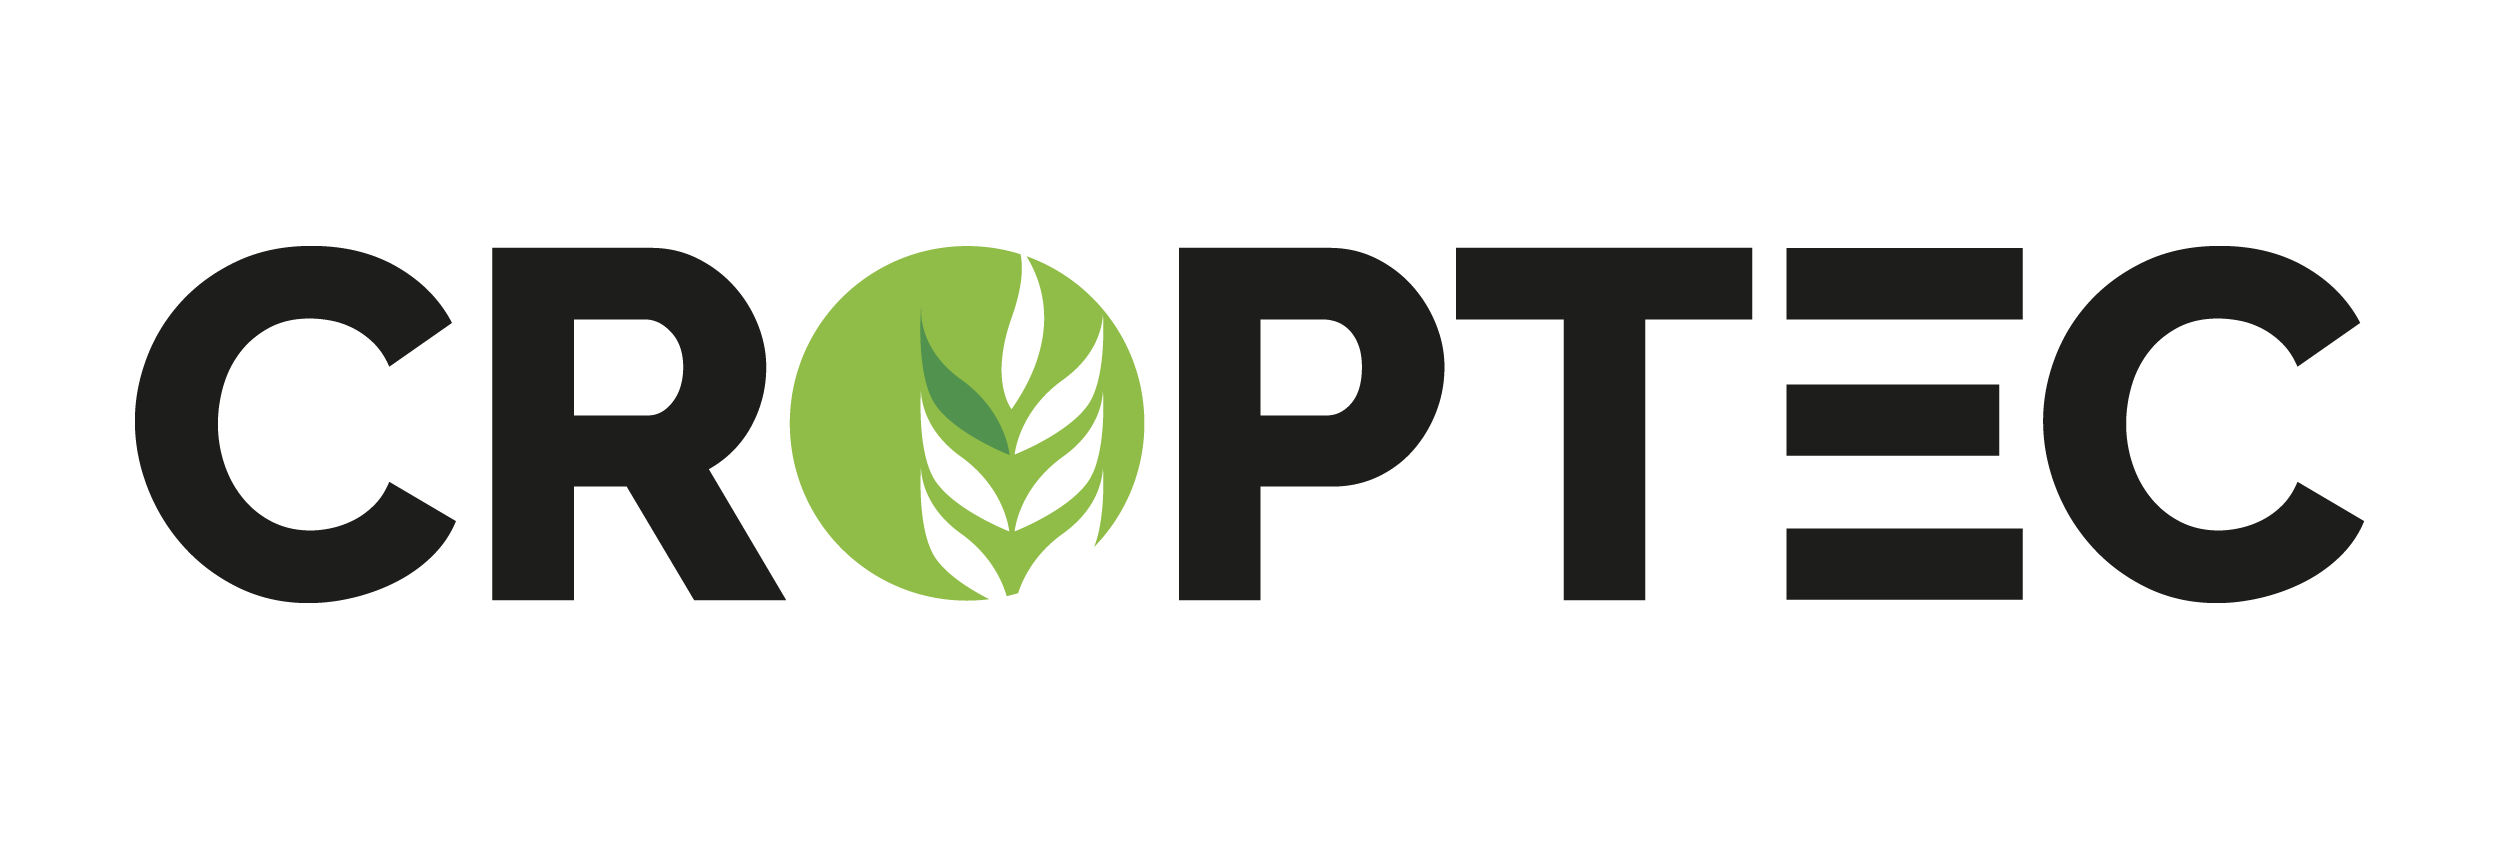 Croptech Show Logo